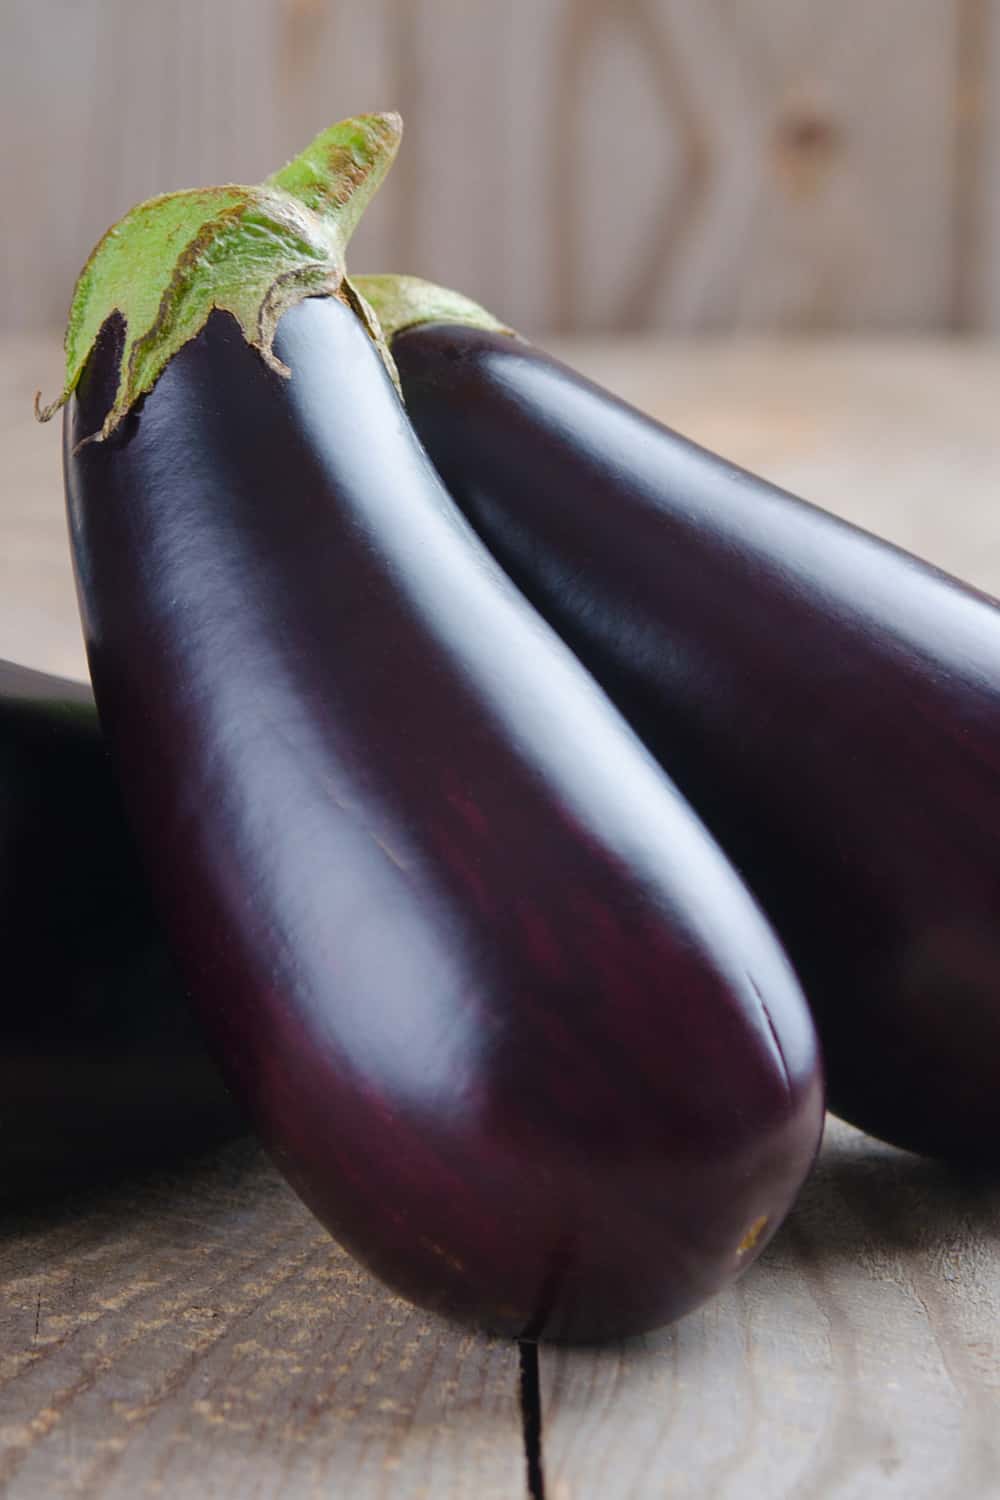 Are eggplants bad?